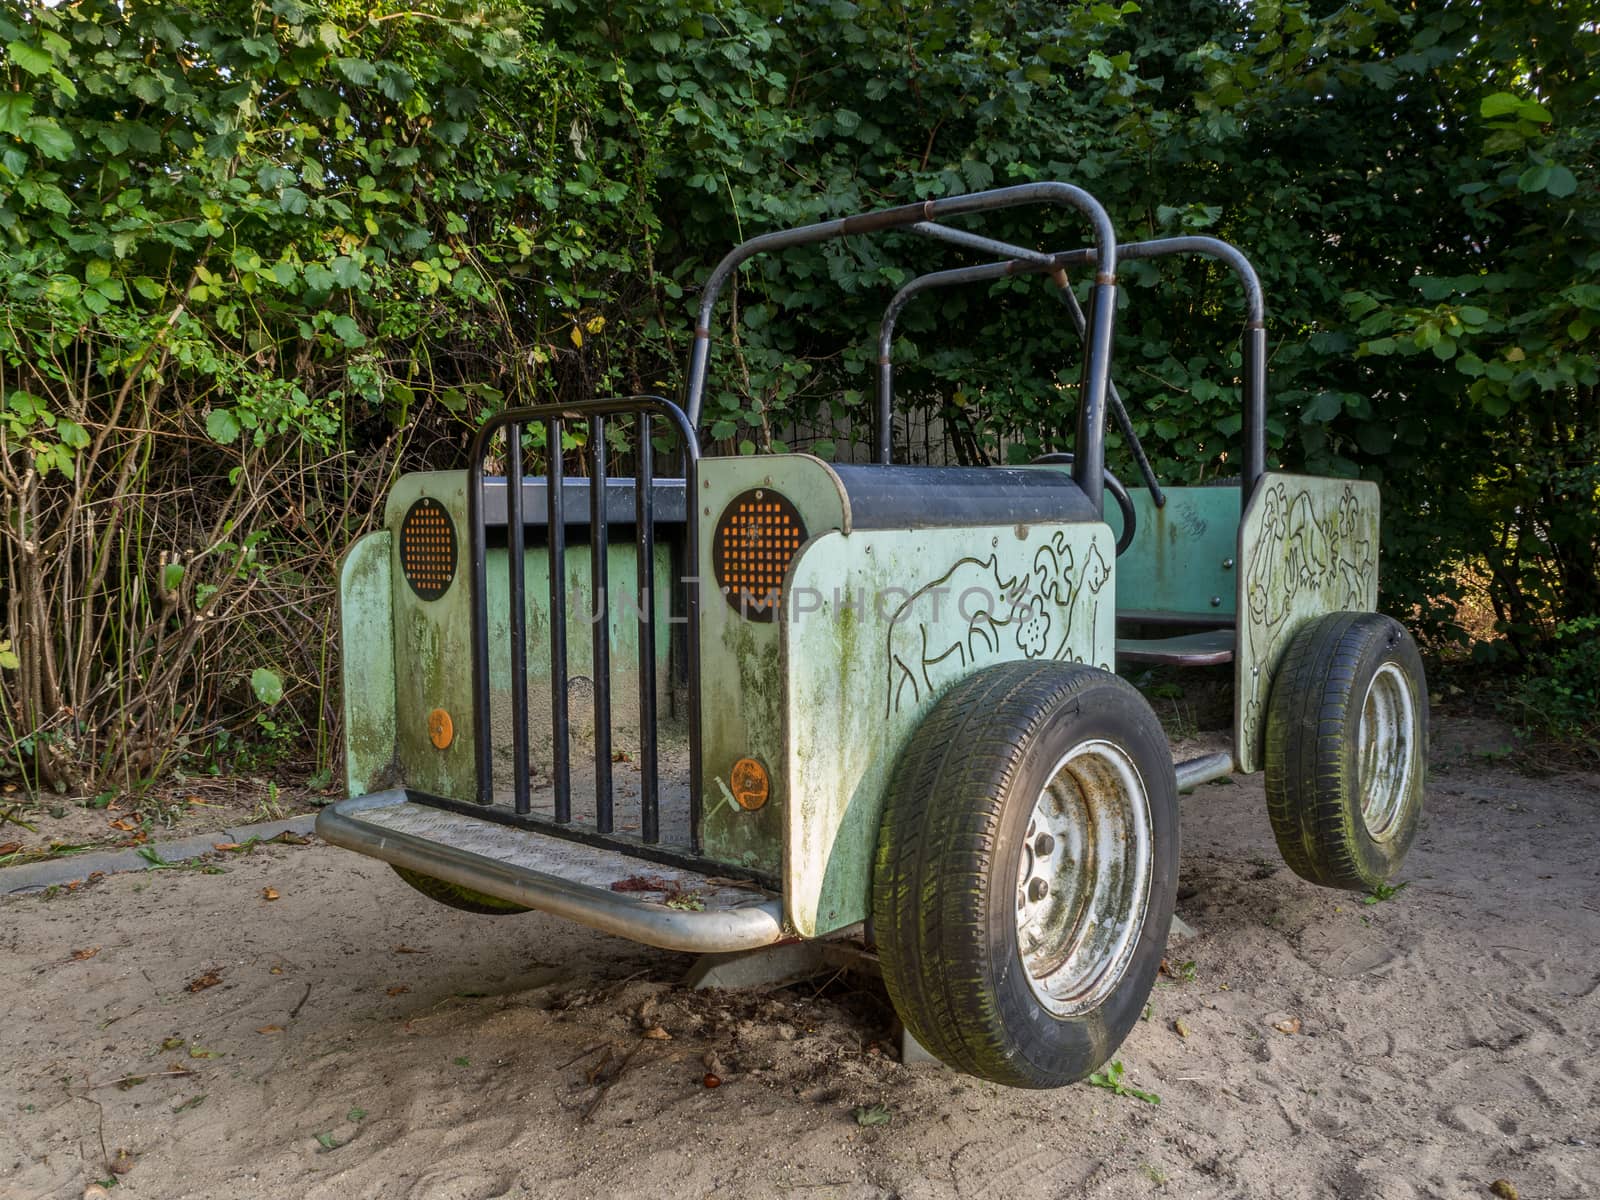 A safari jeep in a children's playground